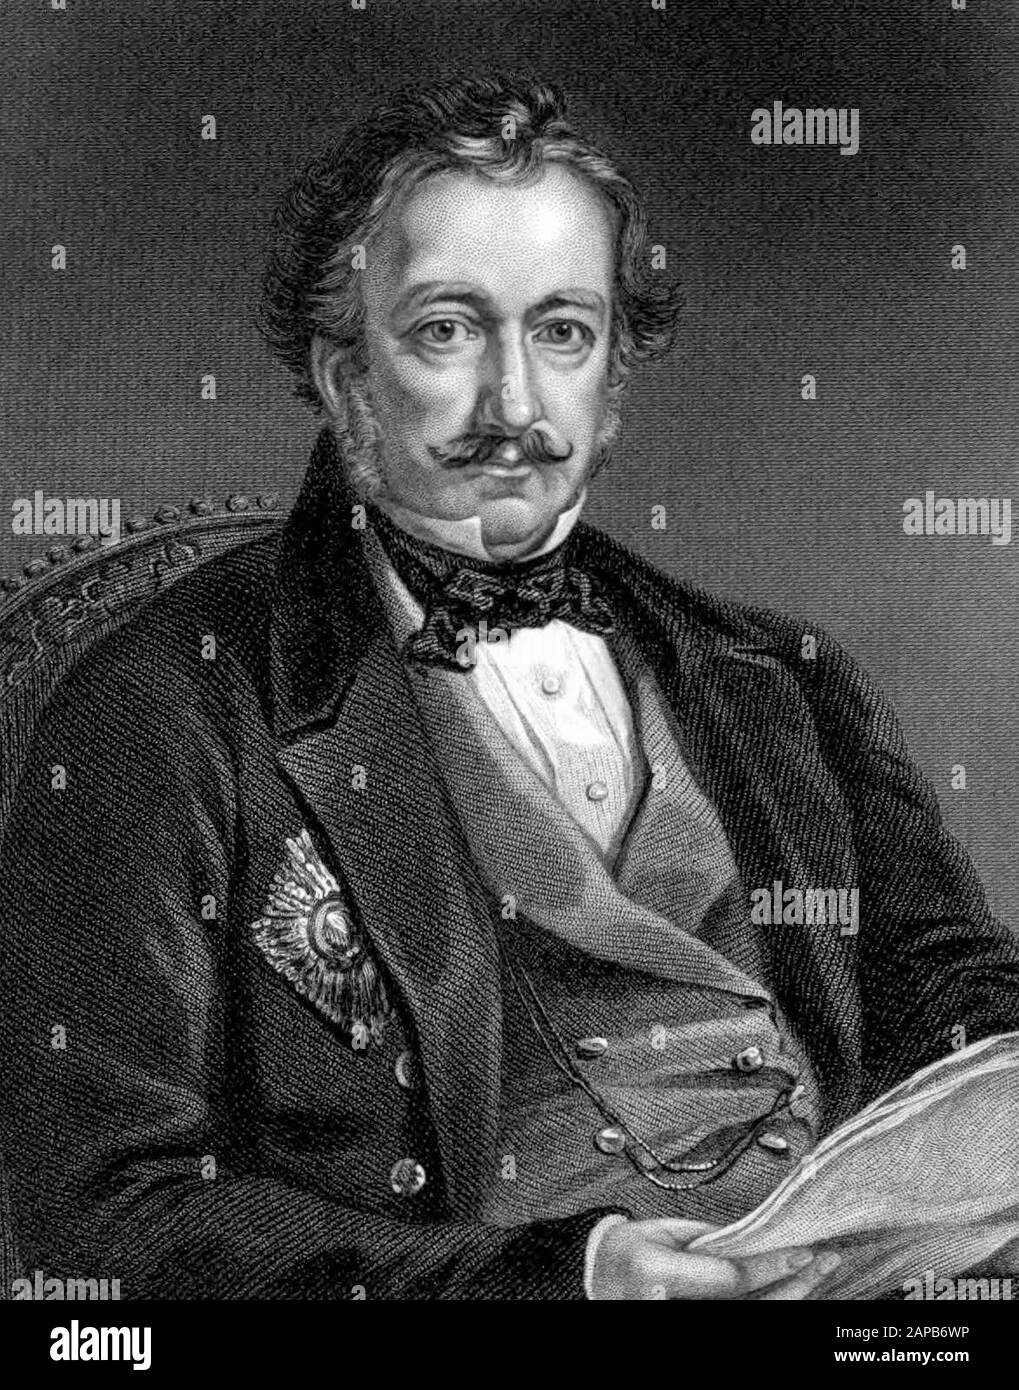 Teniente General Sir Henry Pottinger (1789-1856), 1st Baronet, Primer Gobernador de Hong Kong, grabado de retratos, por E. H. Nolan, 1860 Foto de stock